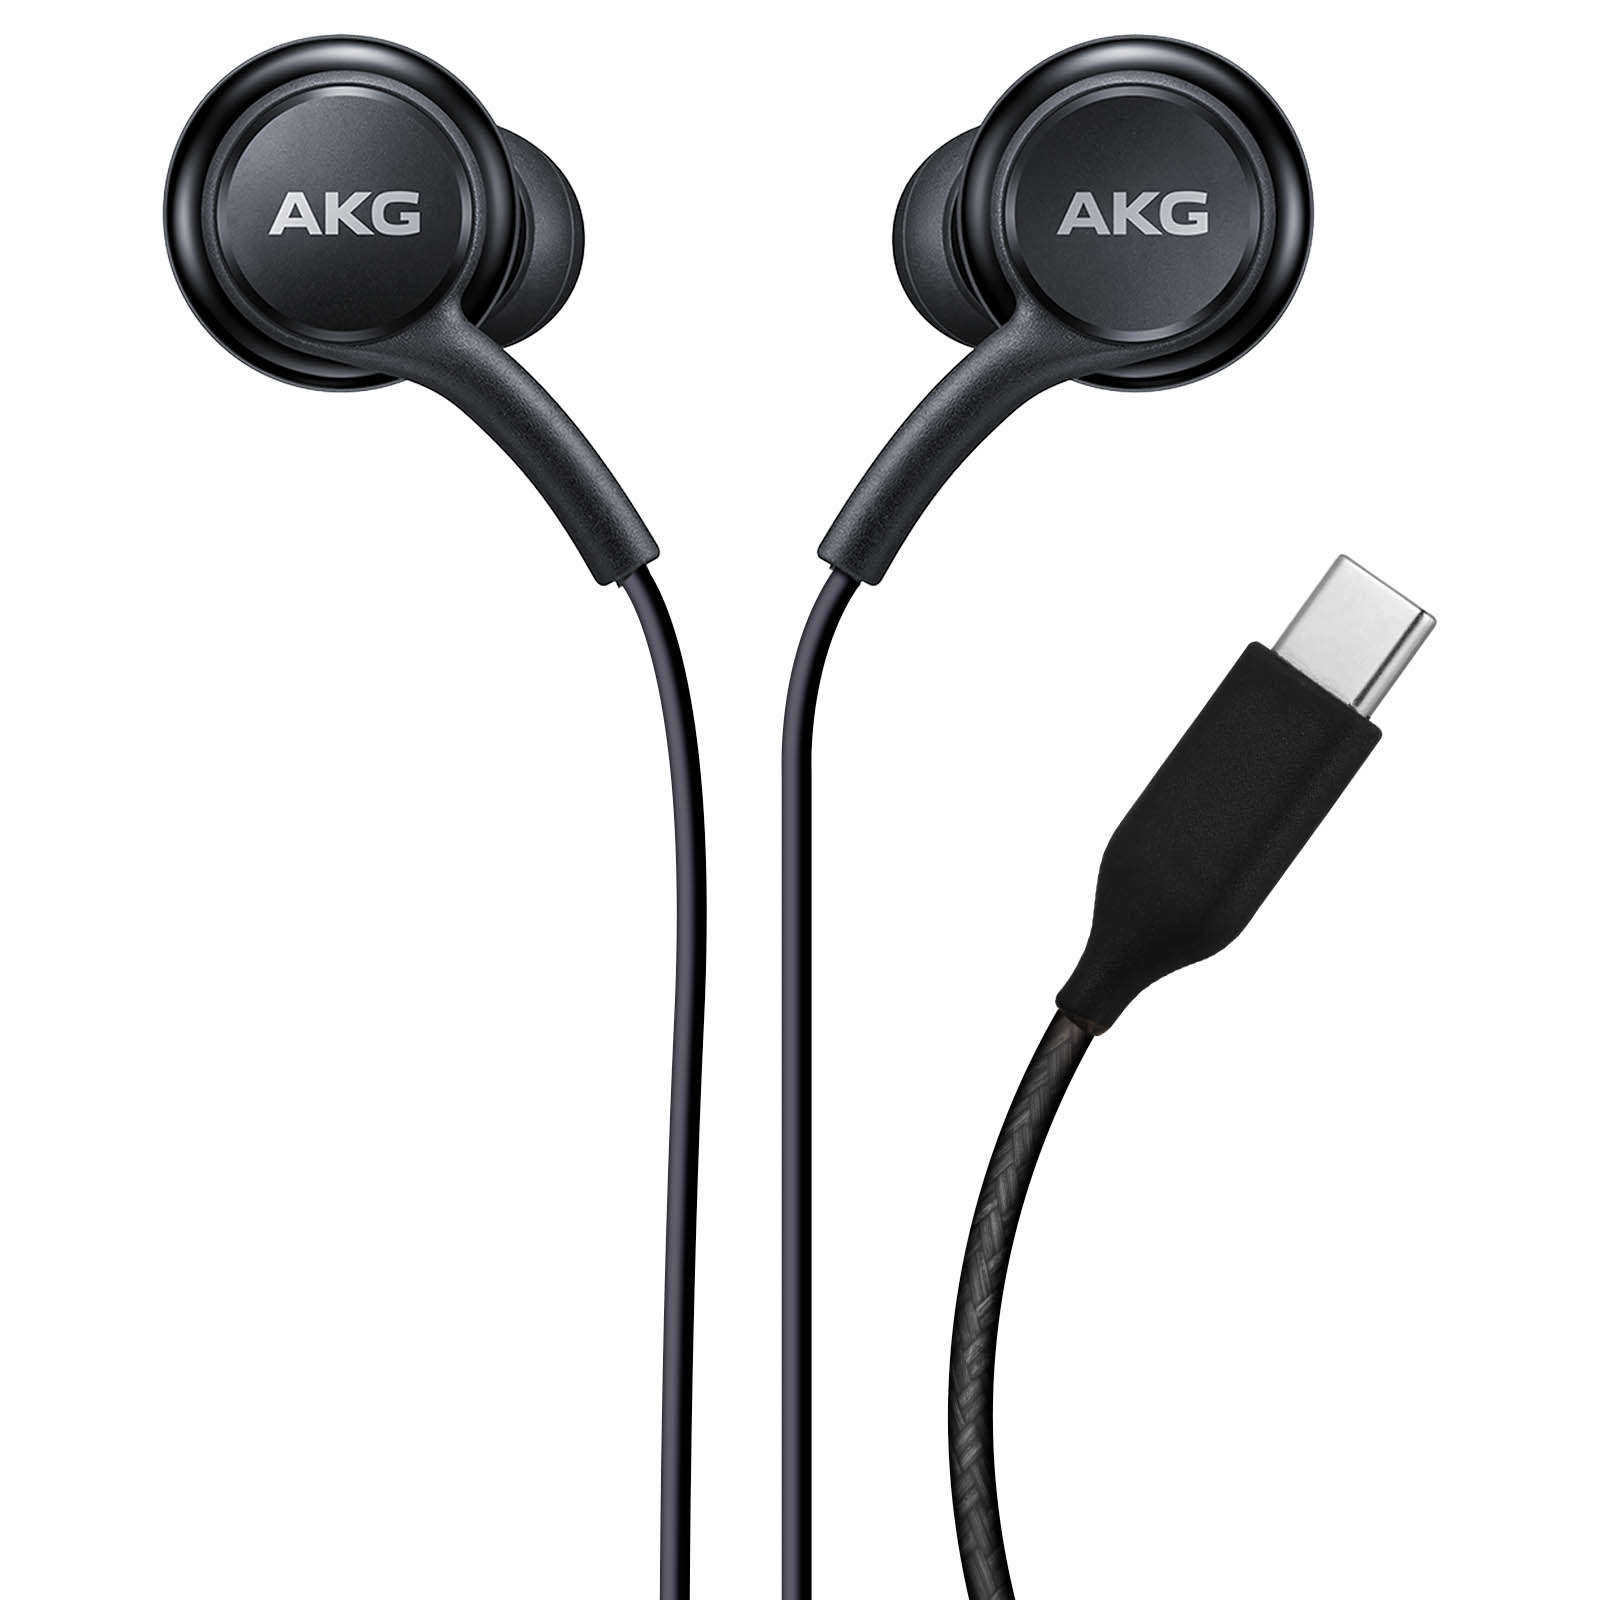 Etseinri Auriculares USB C, auriculares USB tipo C, auriculares estéreo de  alta fidelidad magnéticos con micrófono y control de volumen para S.amsung